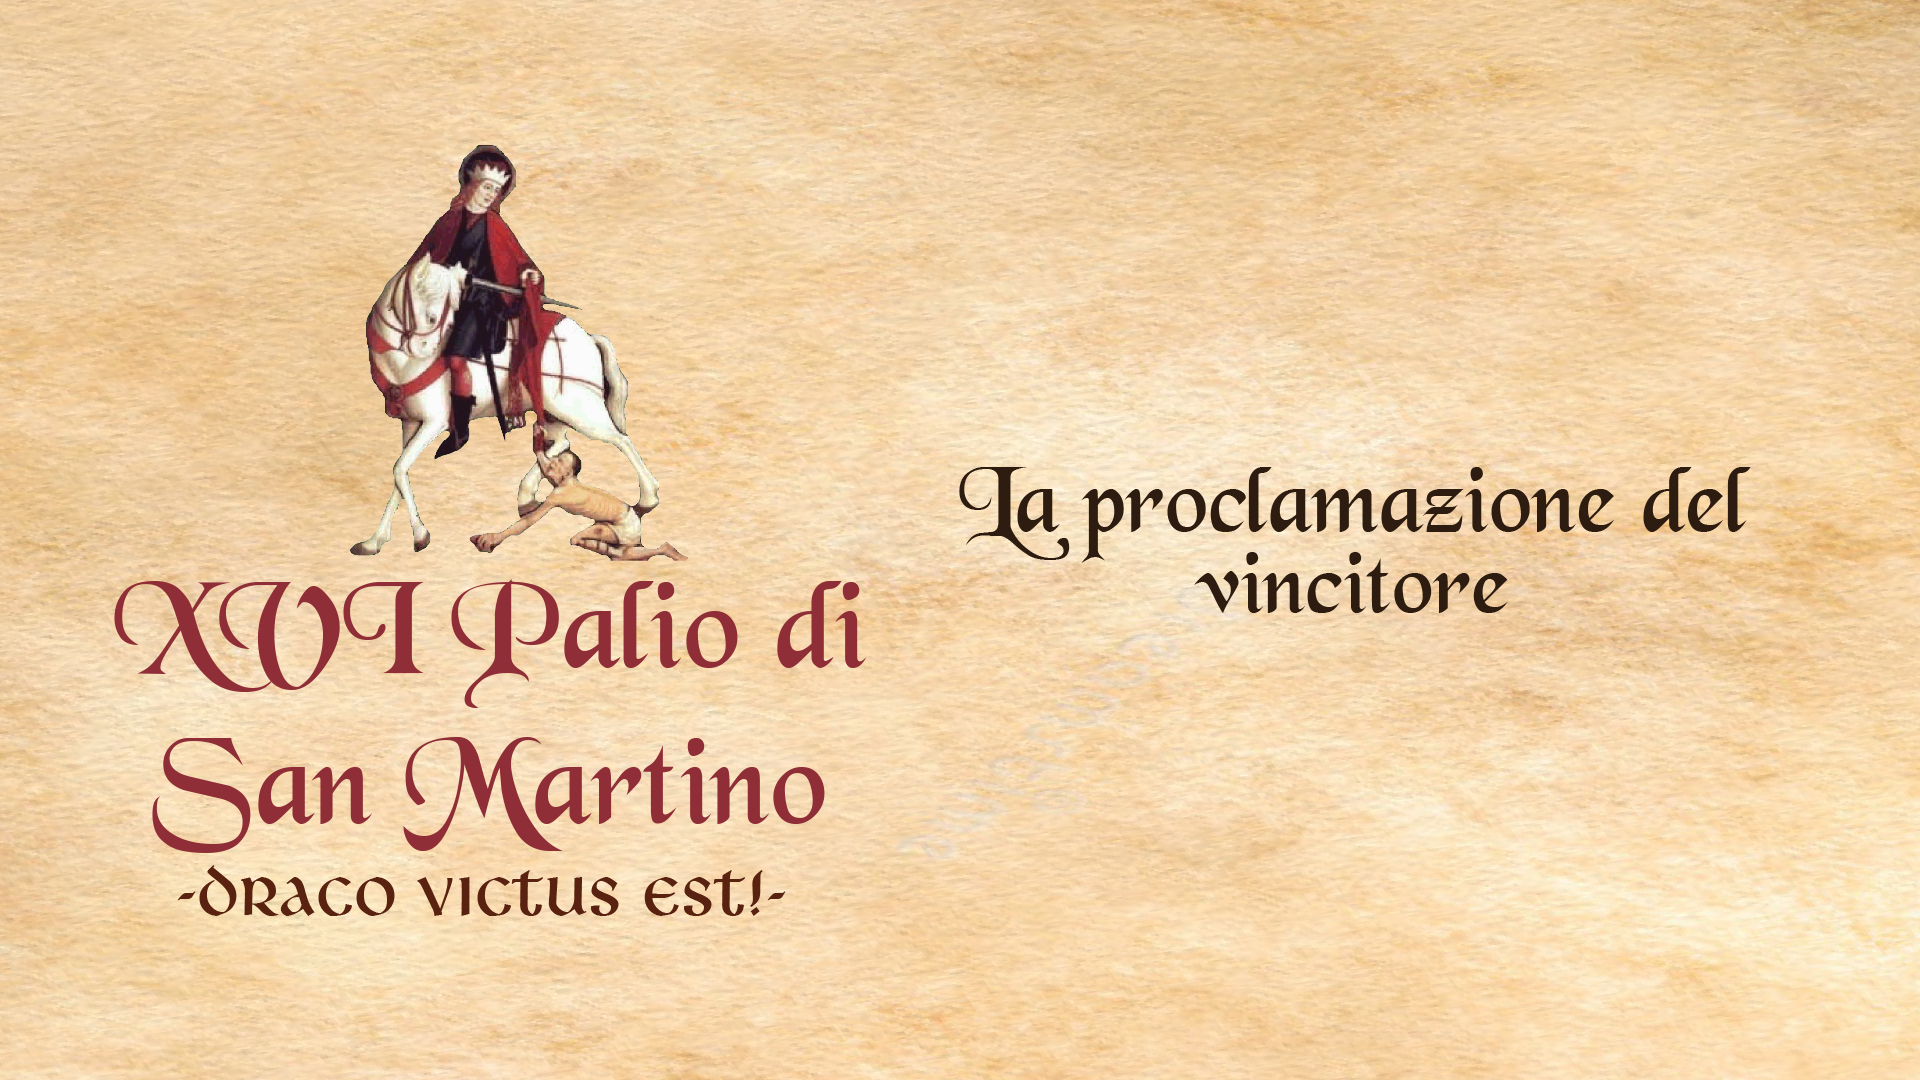 XVI° Palio di San Martino - La proclamazione dei vincitori